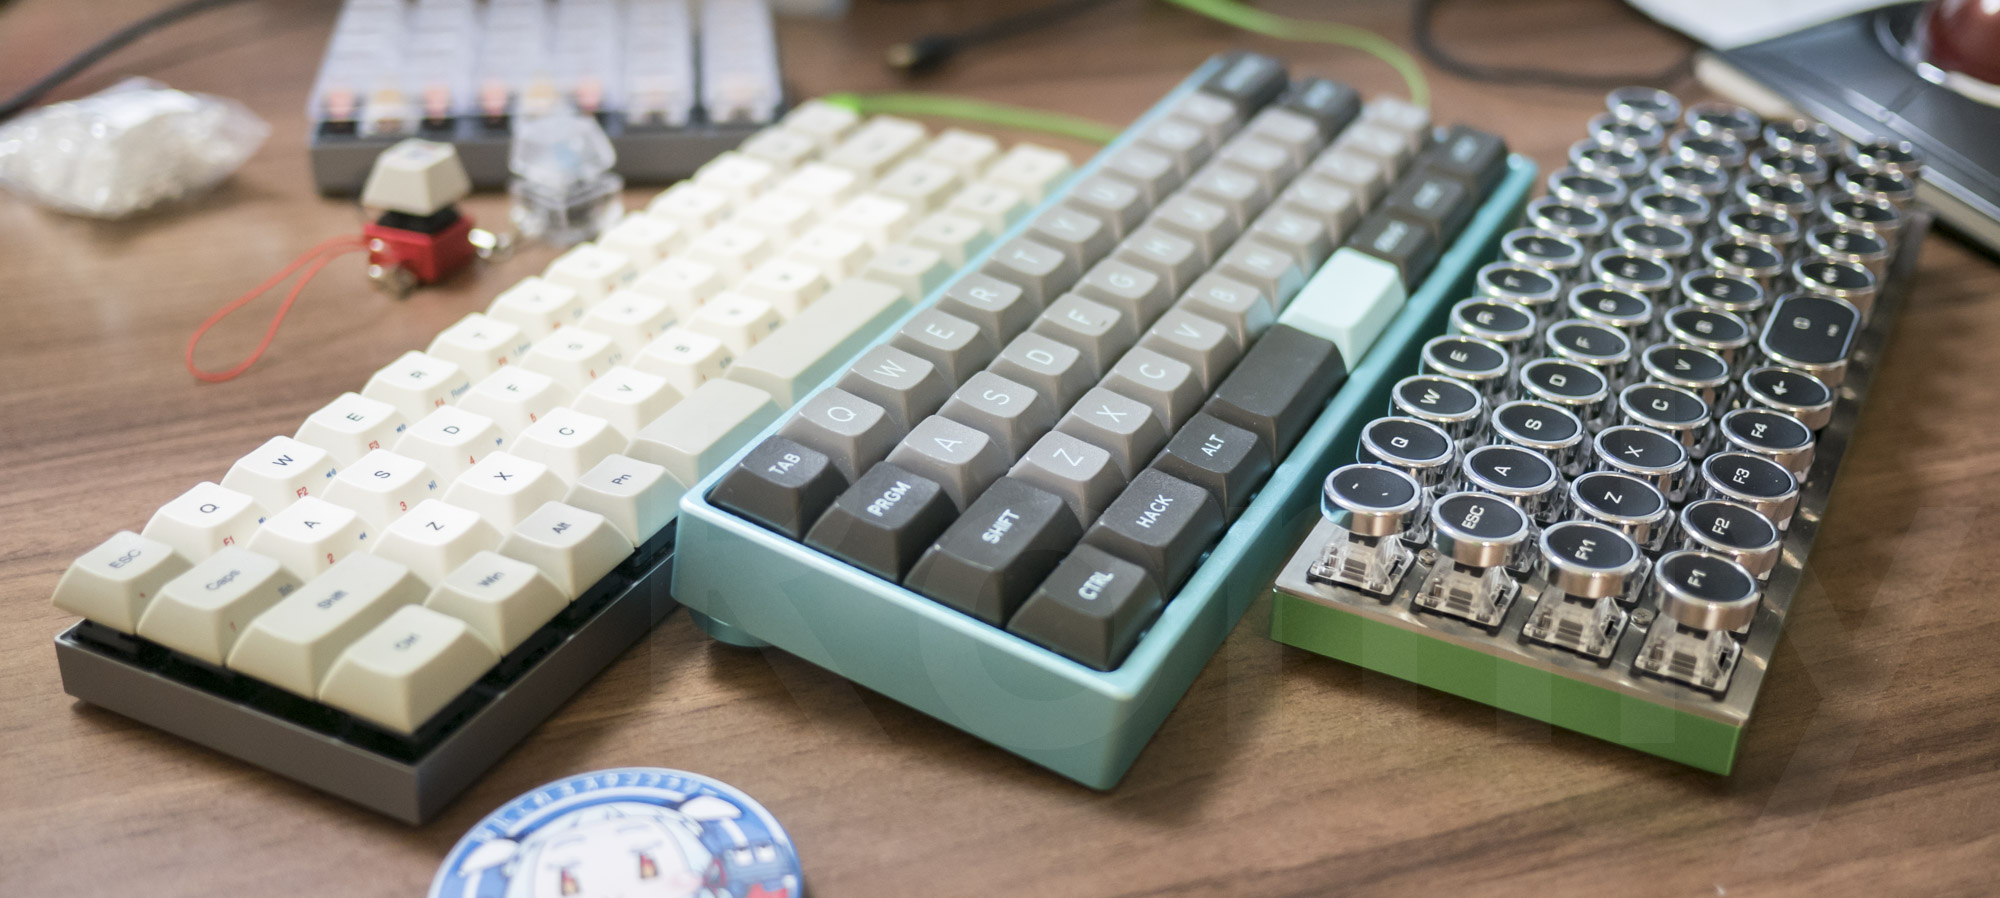 Vortex CORE, MiniVan, Planck Keyboards